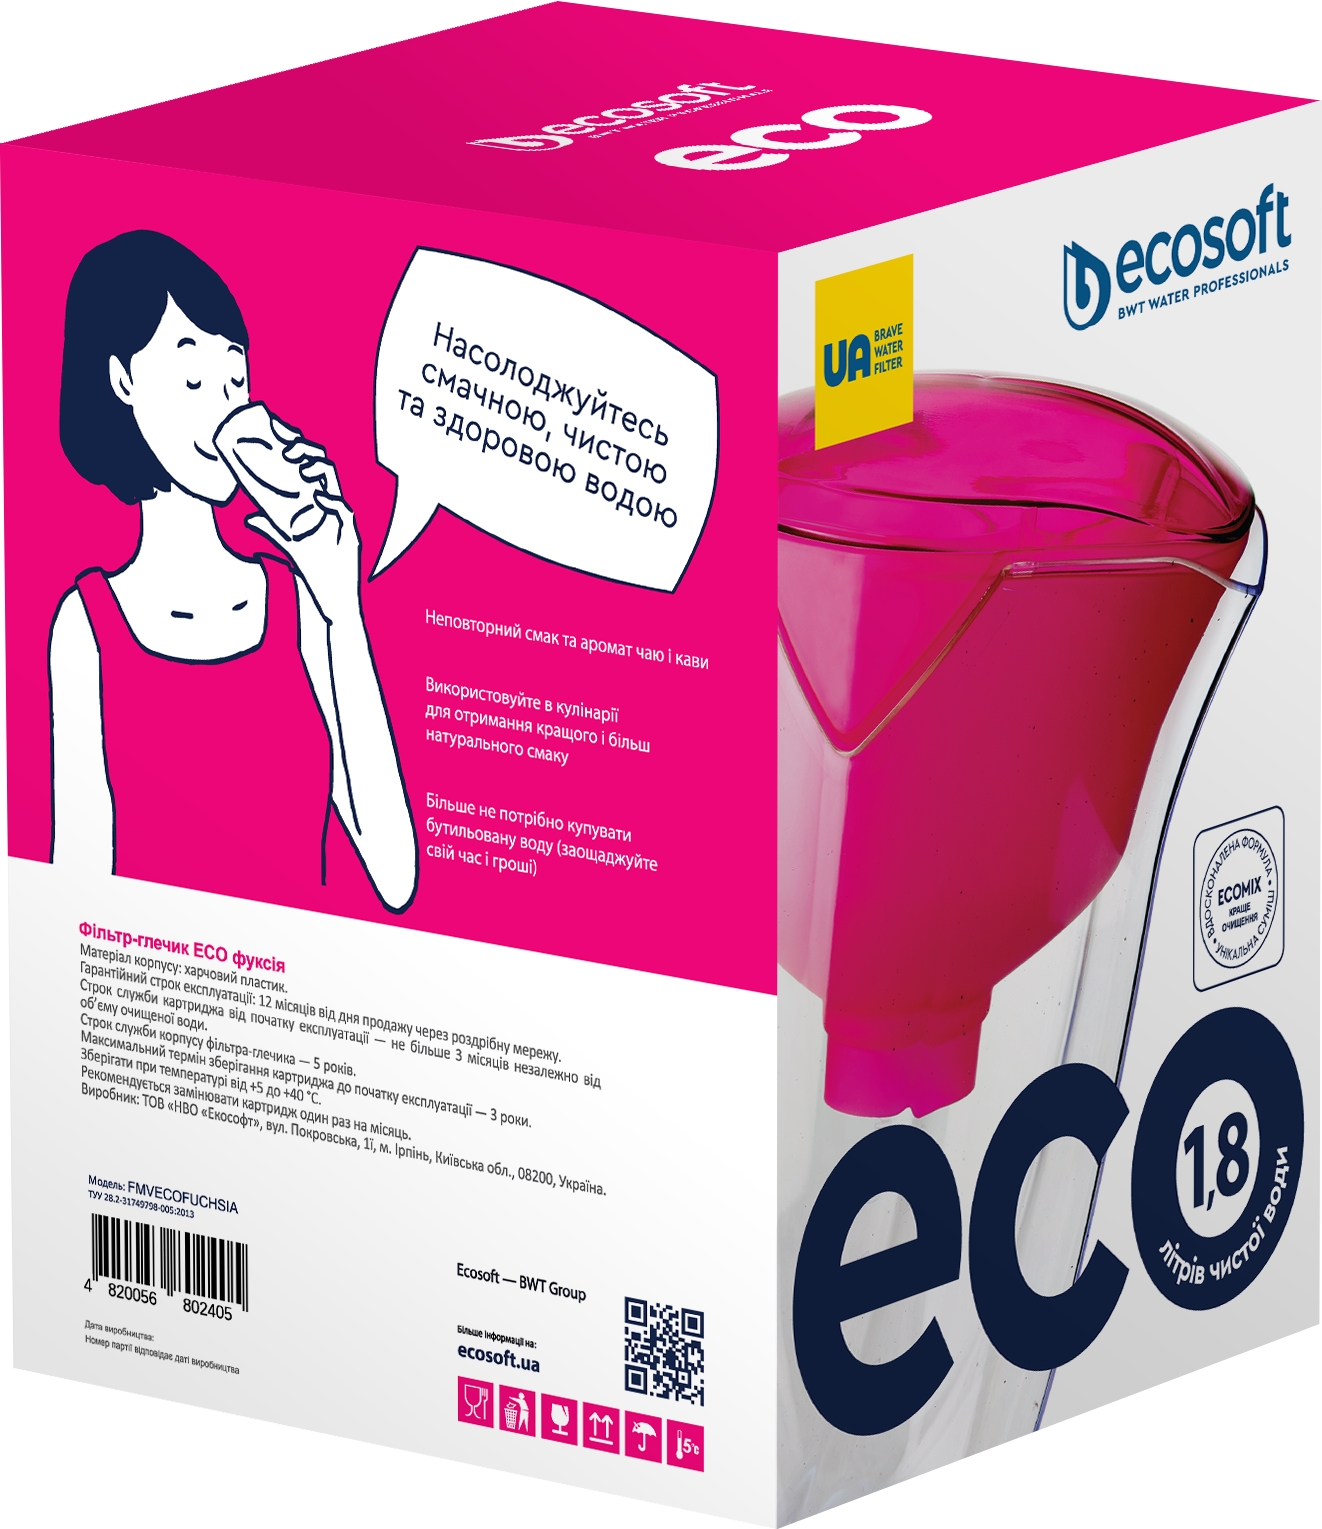 Фильтр для воды Ecosoft ECO фуксия 1,8 л (FMVECOFUCHSIA) цена 299.00 грн - фотография 2